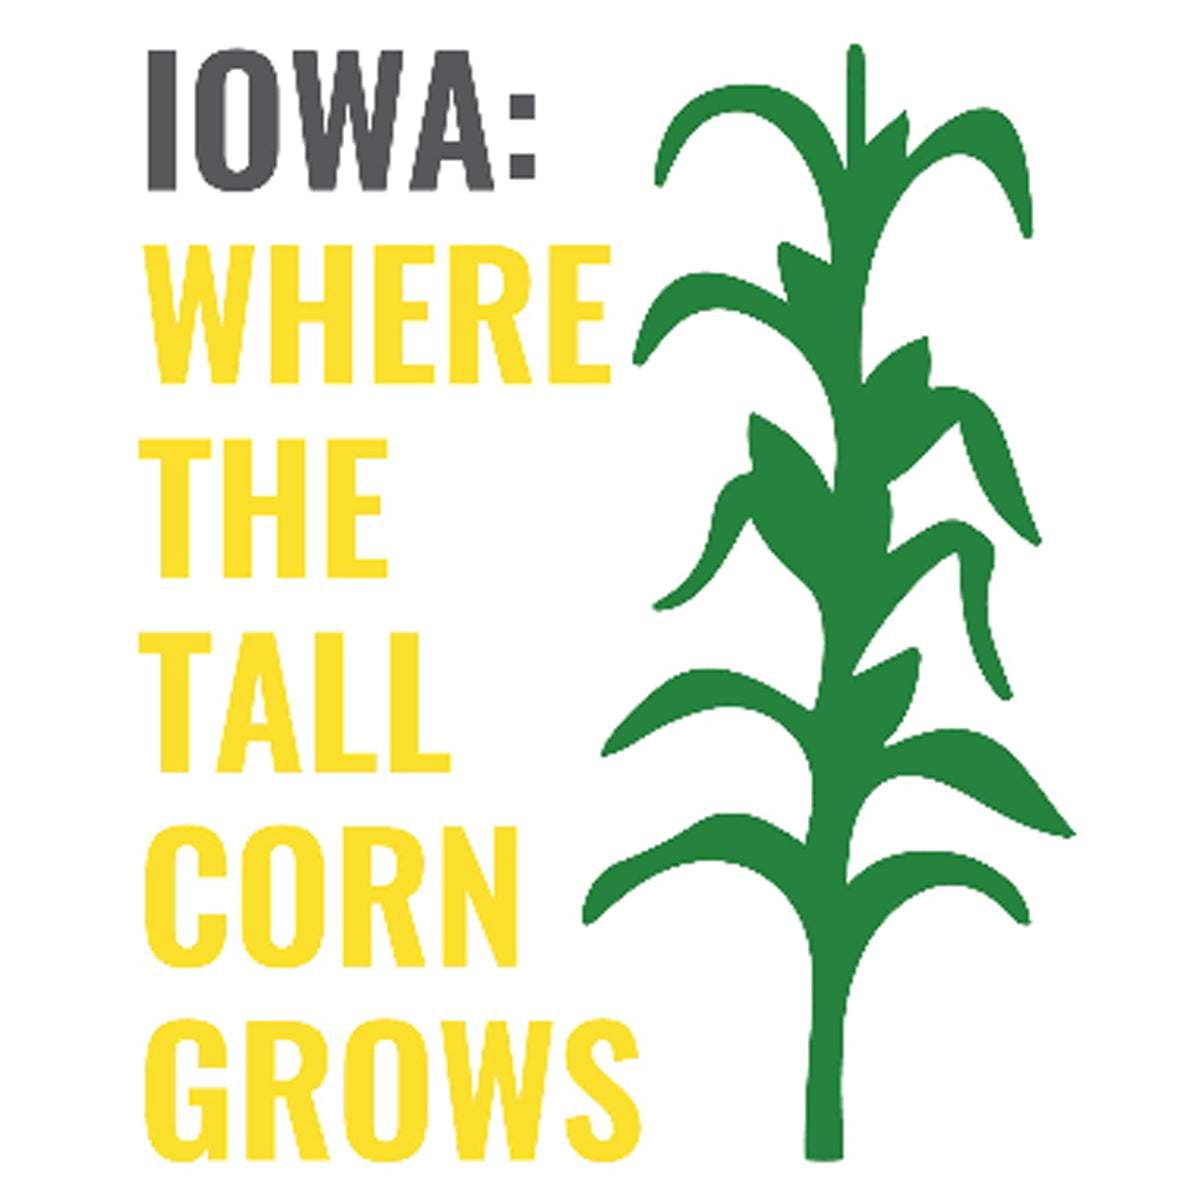 Iowa Tall Corn Printed Tee Humorous Shirt 411 